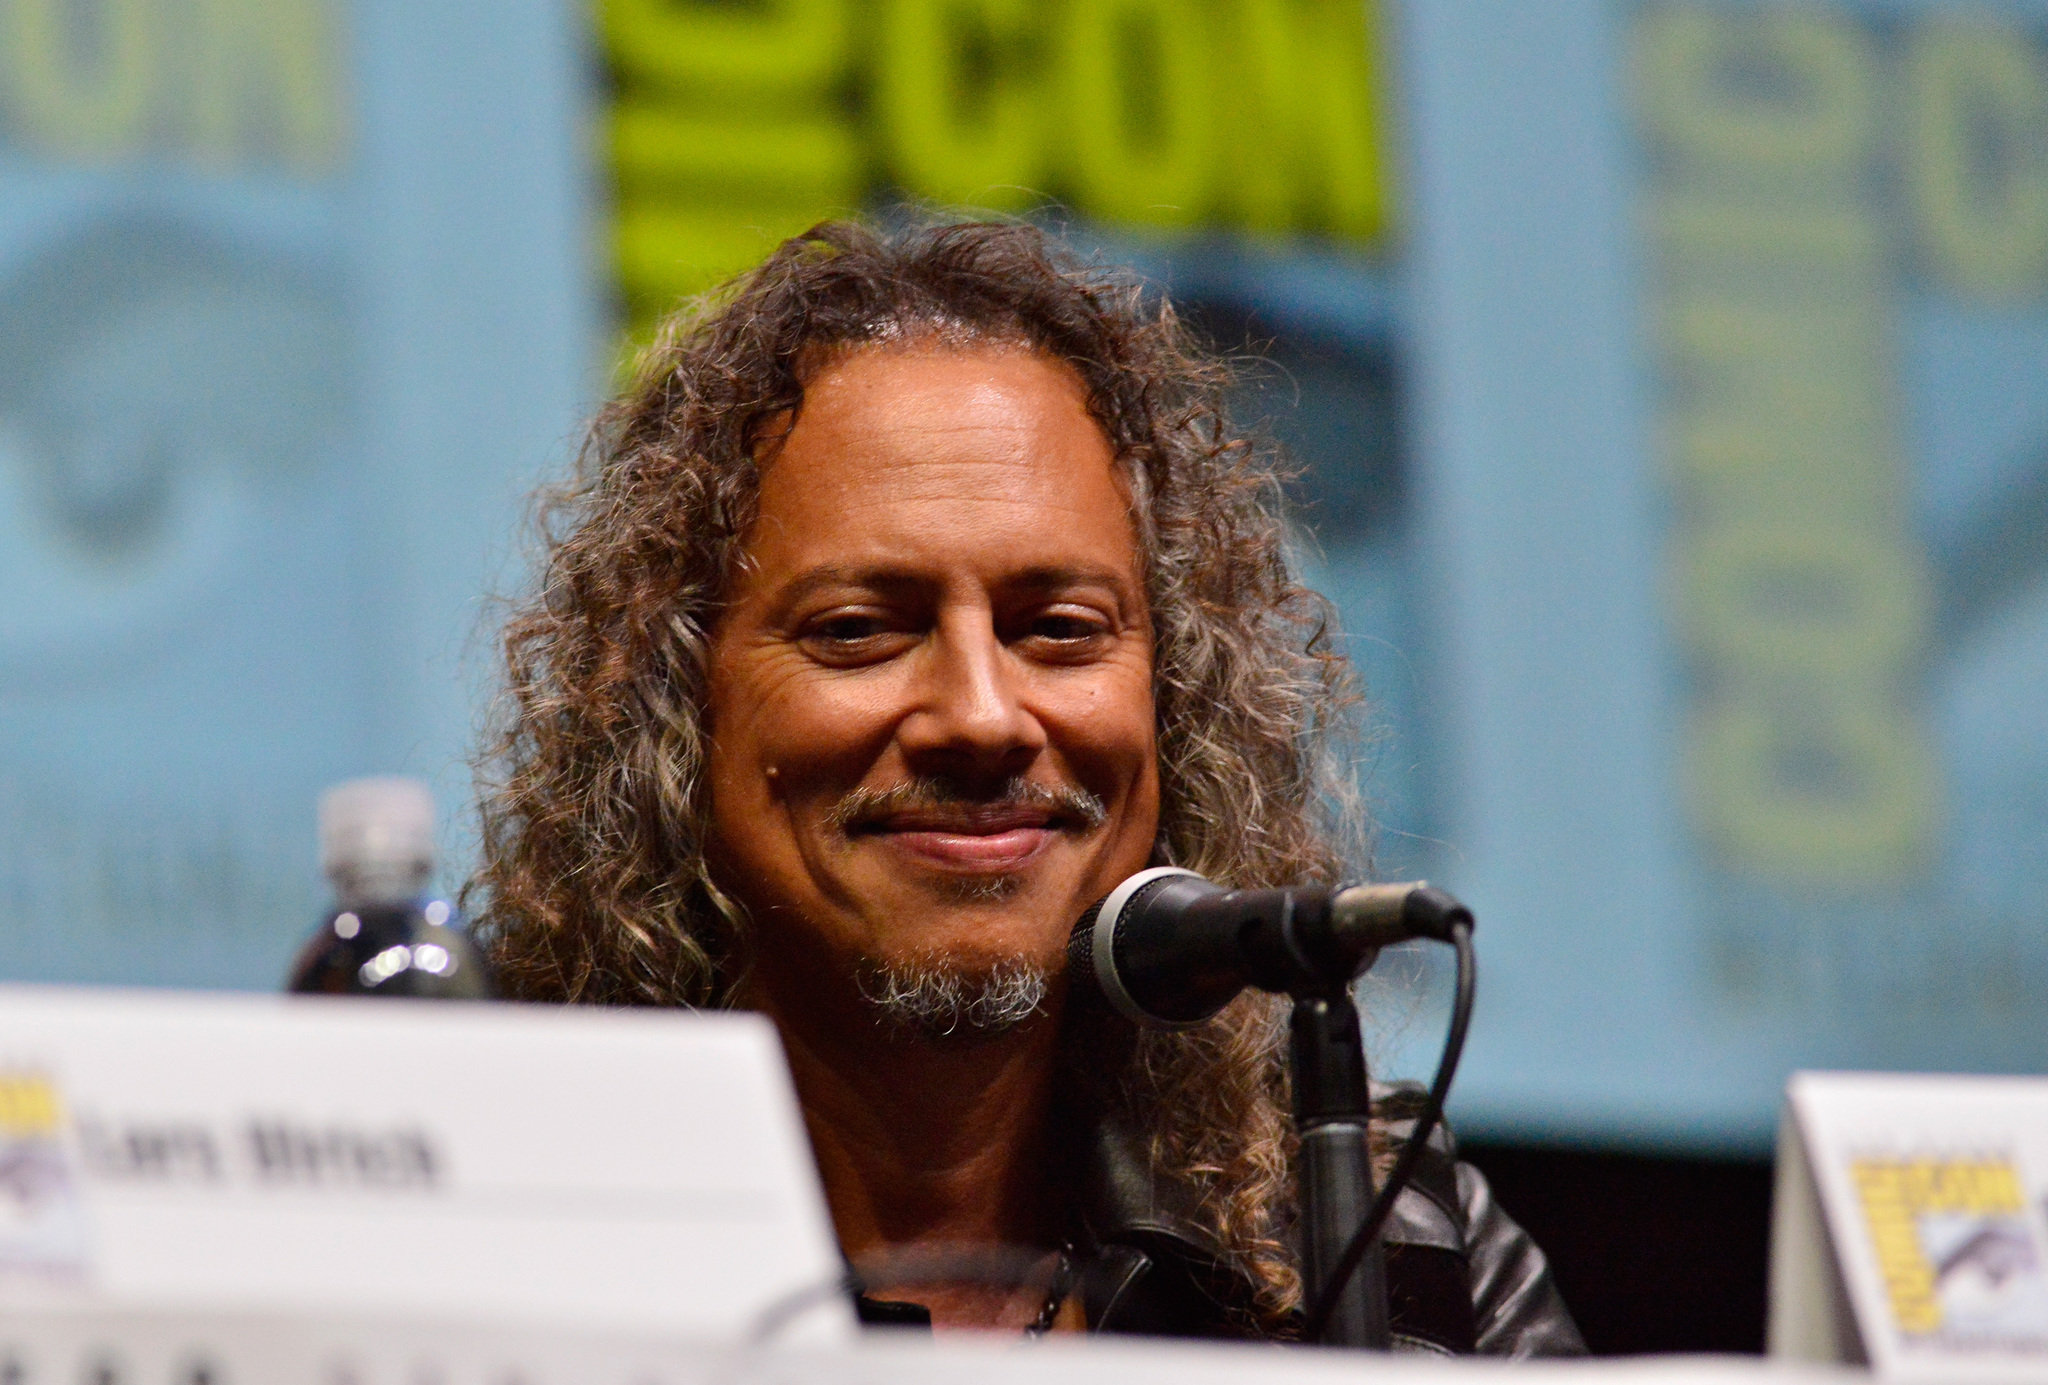 Kirk Hammett at event of Metallica Through the Never (2013)